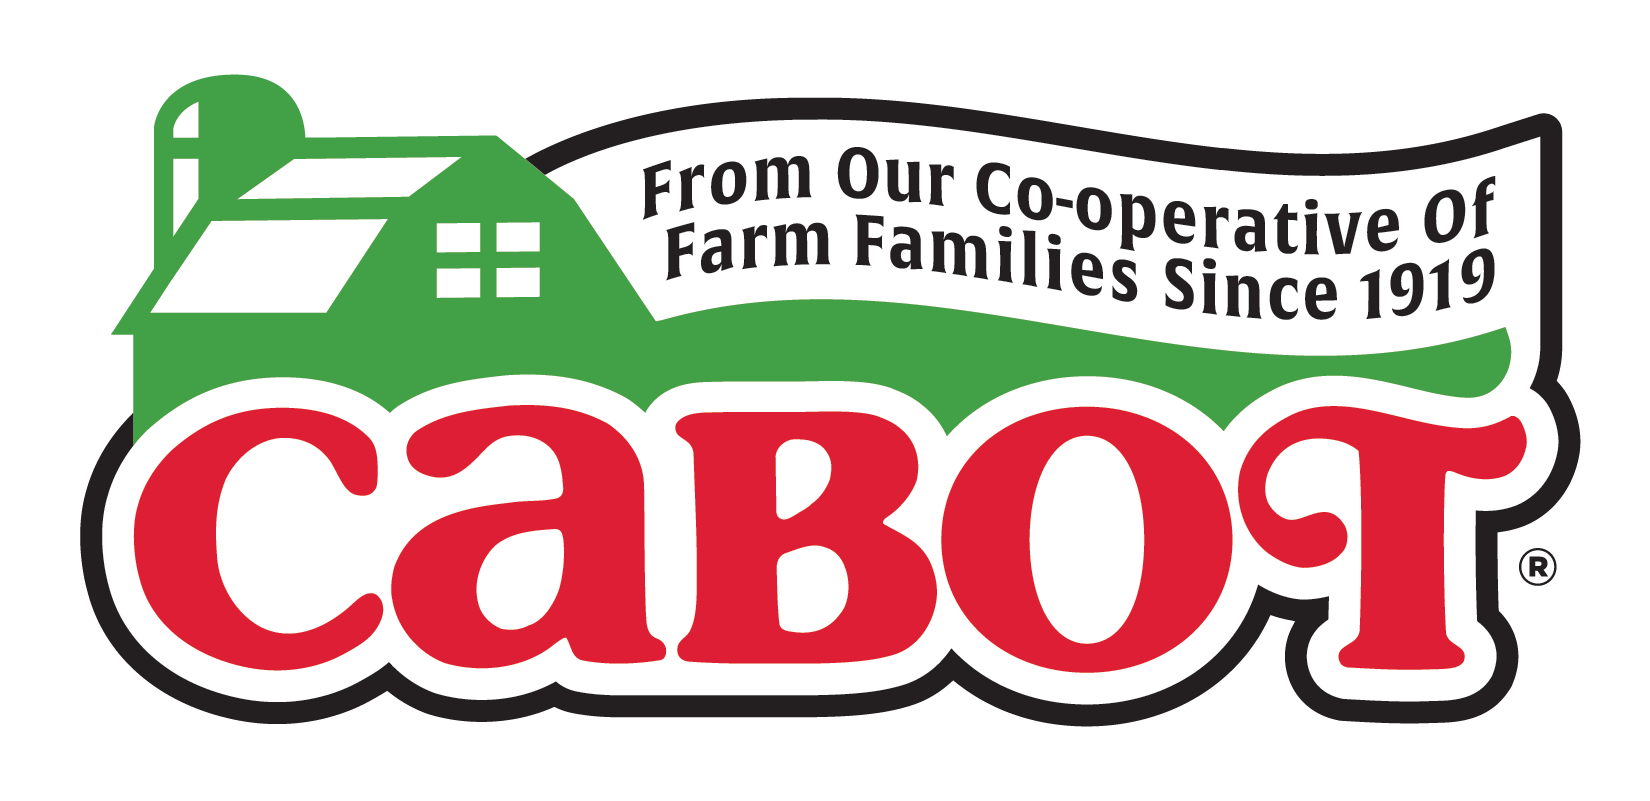 Cabot_Logo